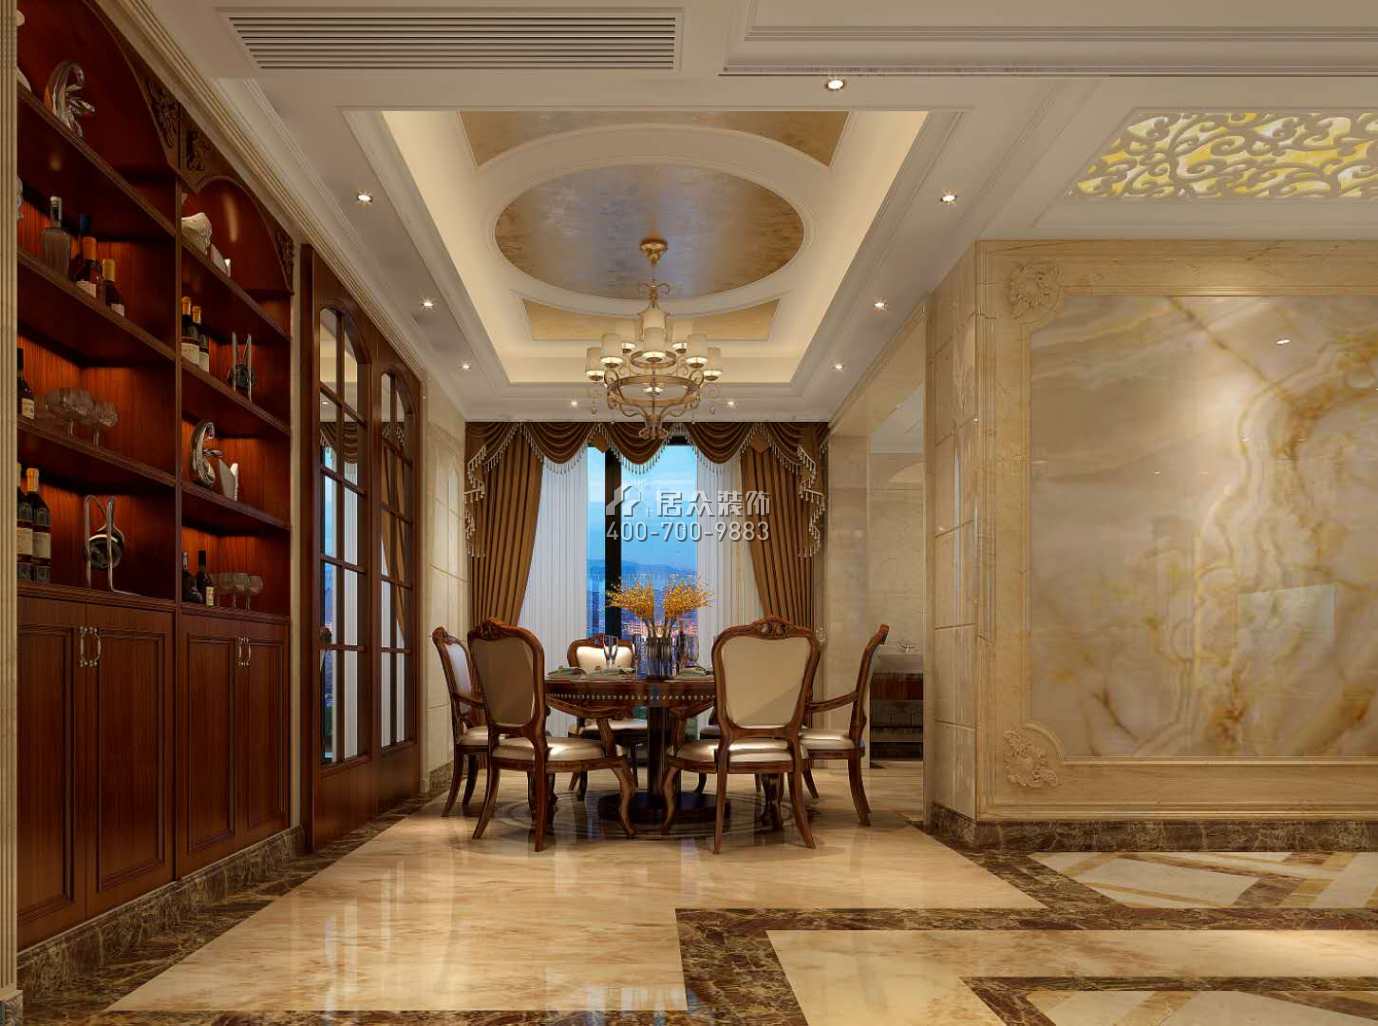 鳳城明珠150平方米歐式風格平層戶型餐廳裝修效果圖